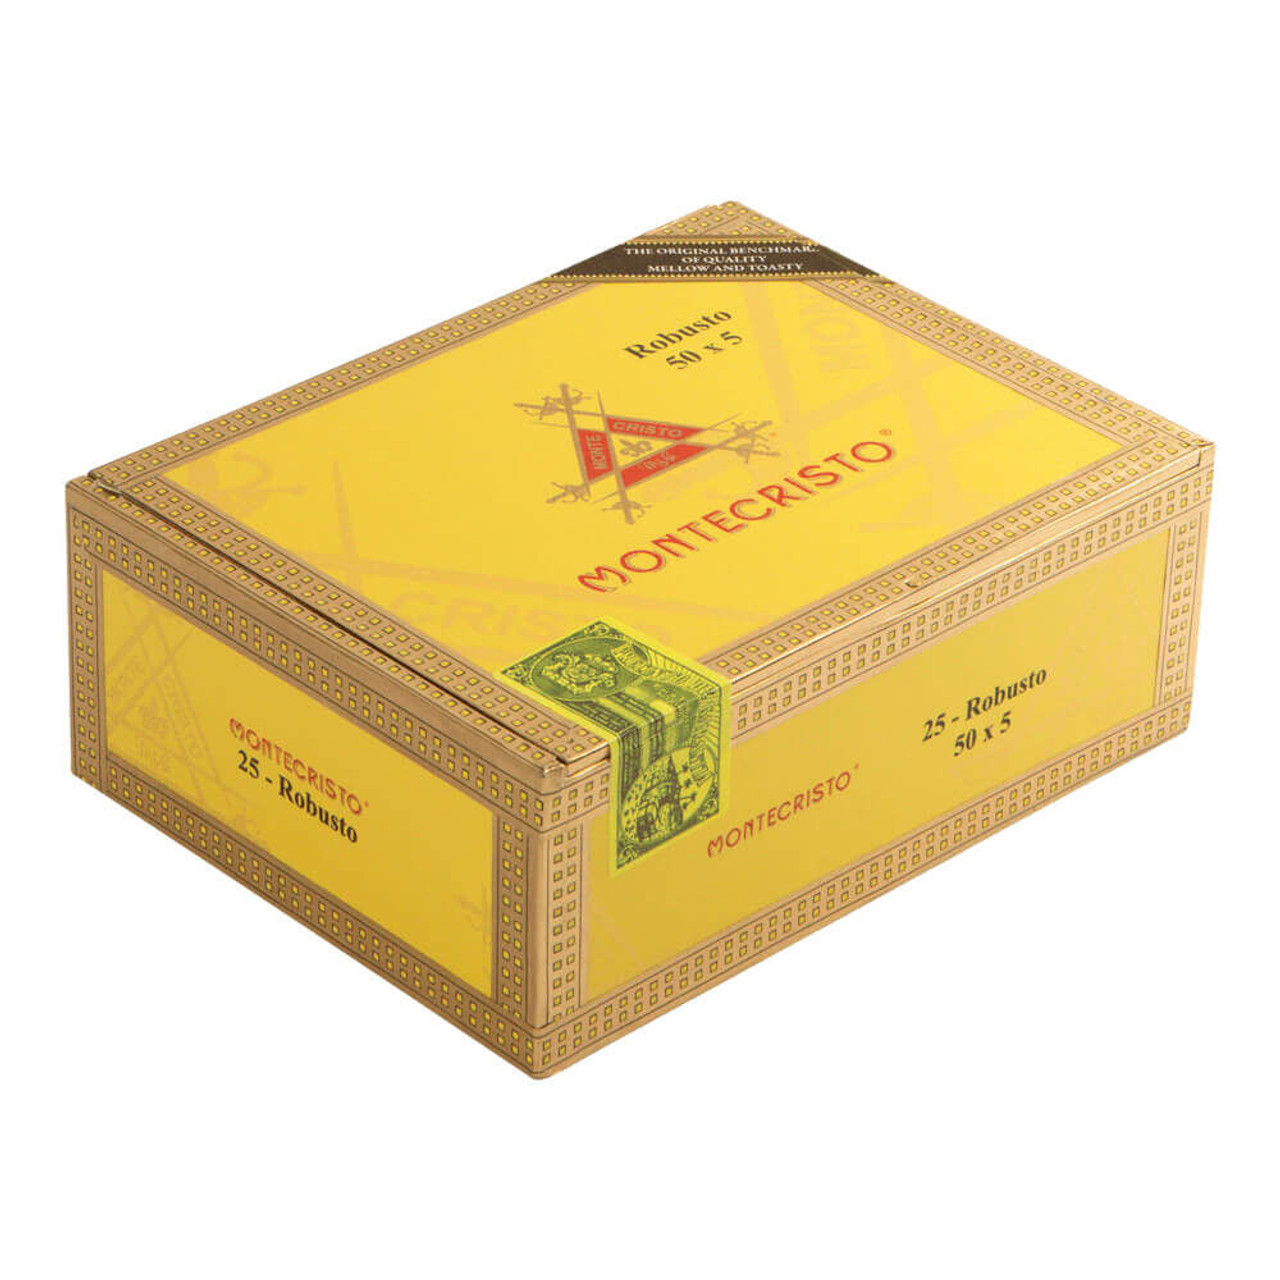 Montecristo No. 4 Box-Pressed Cigars - 4 x 44 (Box of 20) *Box